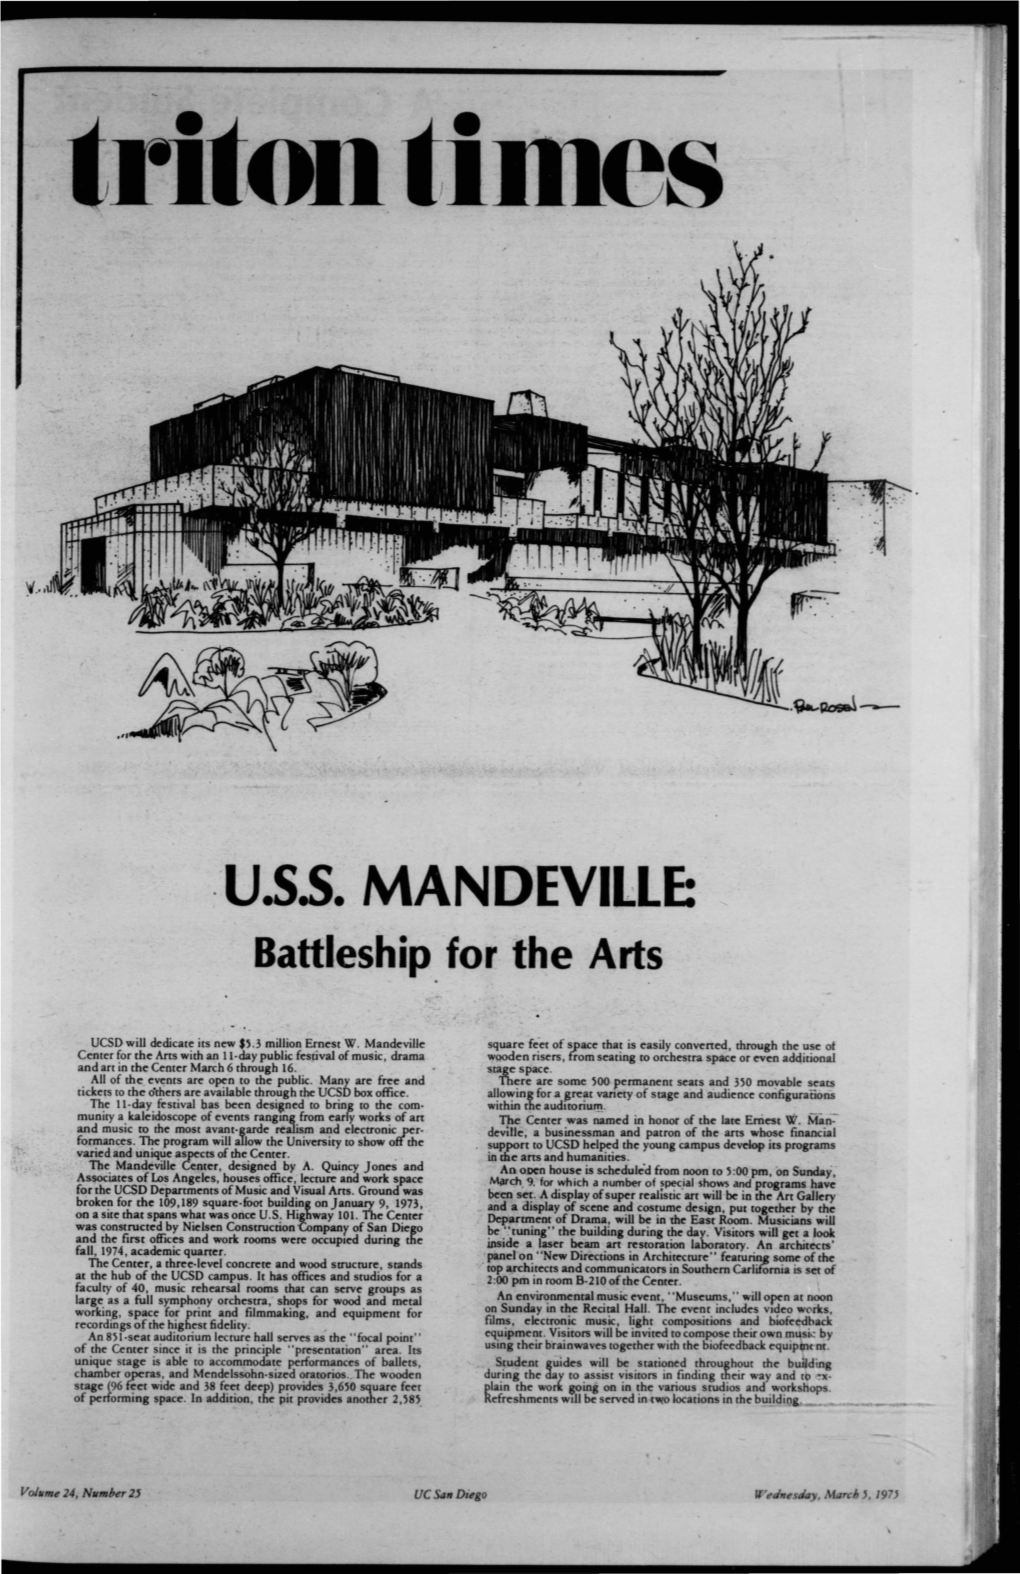 ·U.S.S. MANDEVILLE: Battleship for the Arts